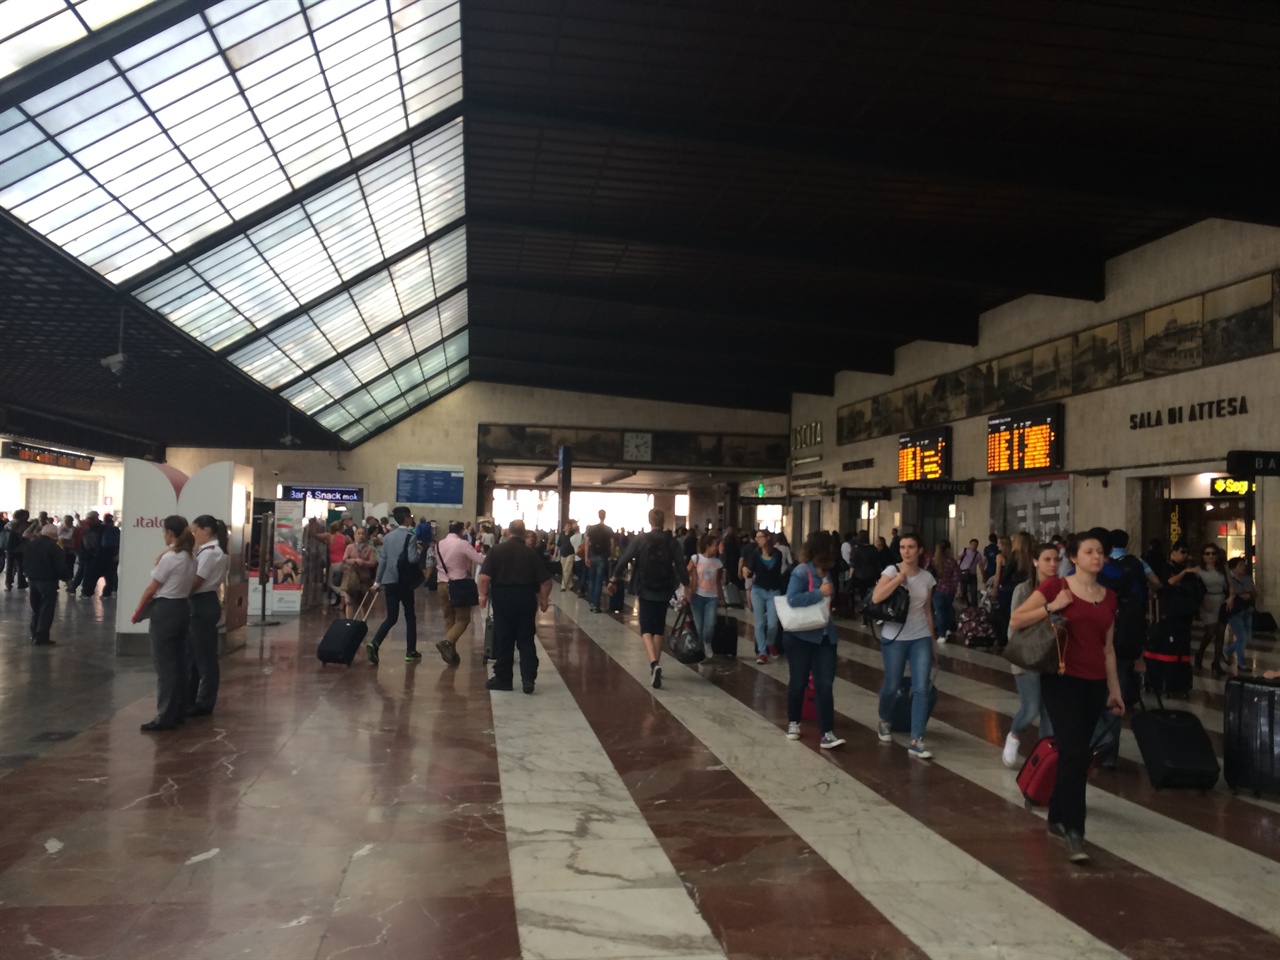    다섯 번에 걸친 피렌체 여행의 시작이었다. 기차역은 여행자에게 기대와 설렘, 그리고 약간의 불안감이 공존하는 곳이다.